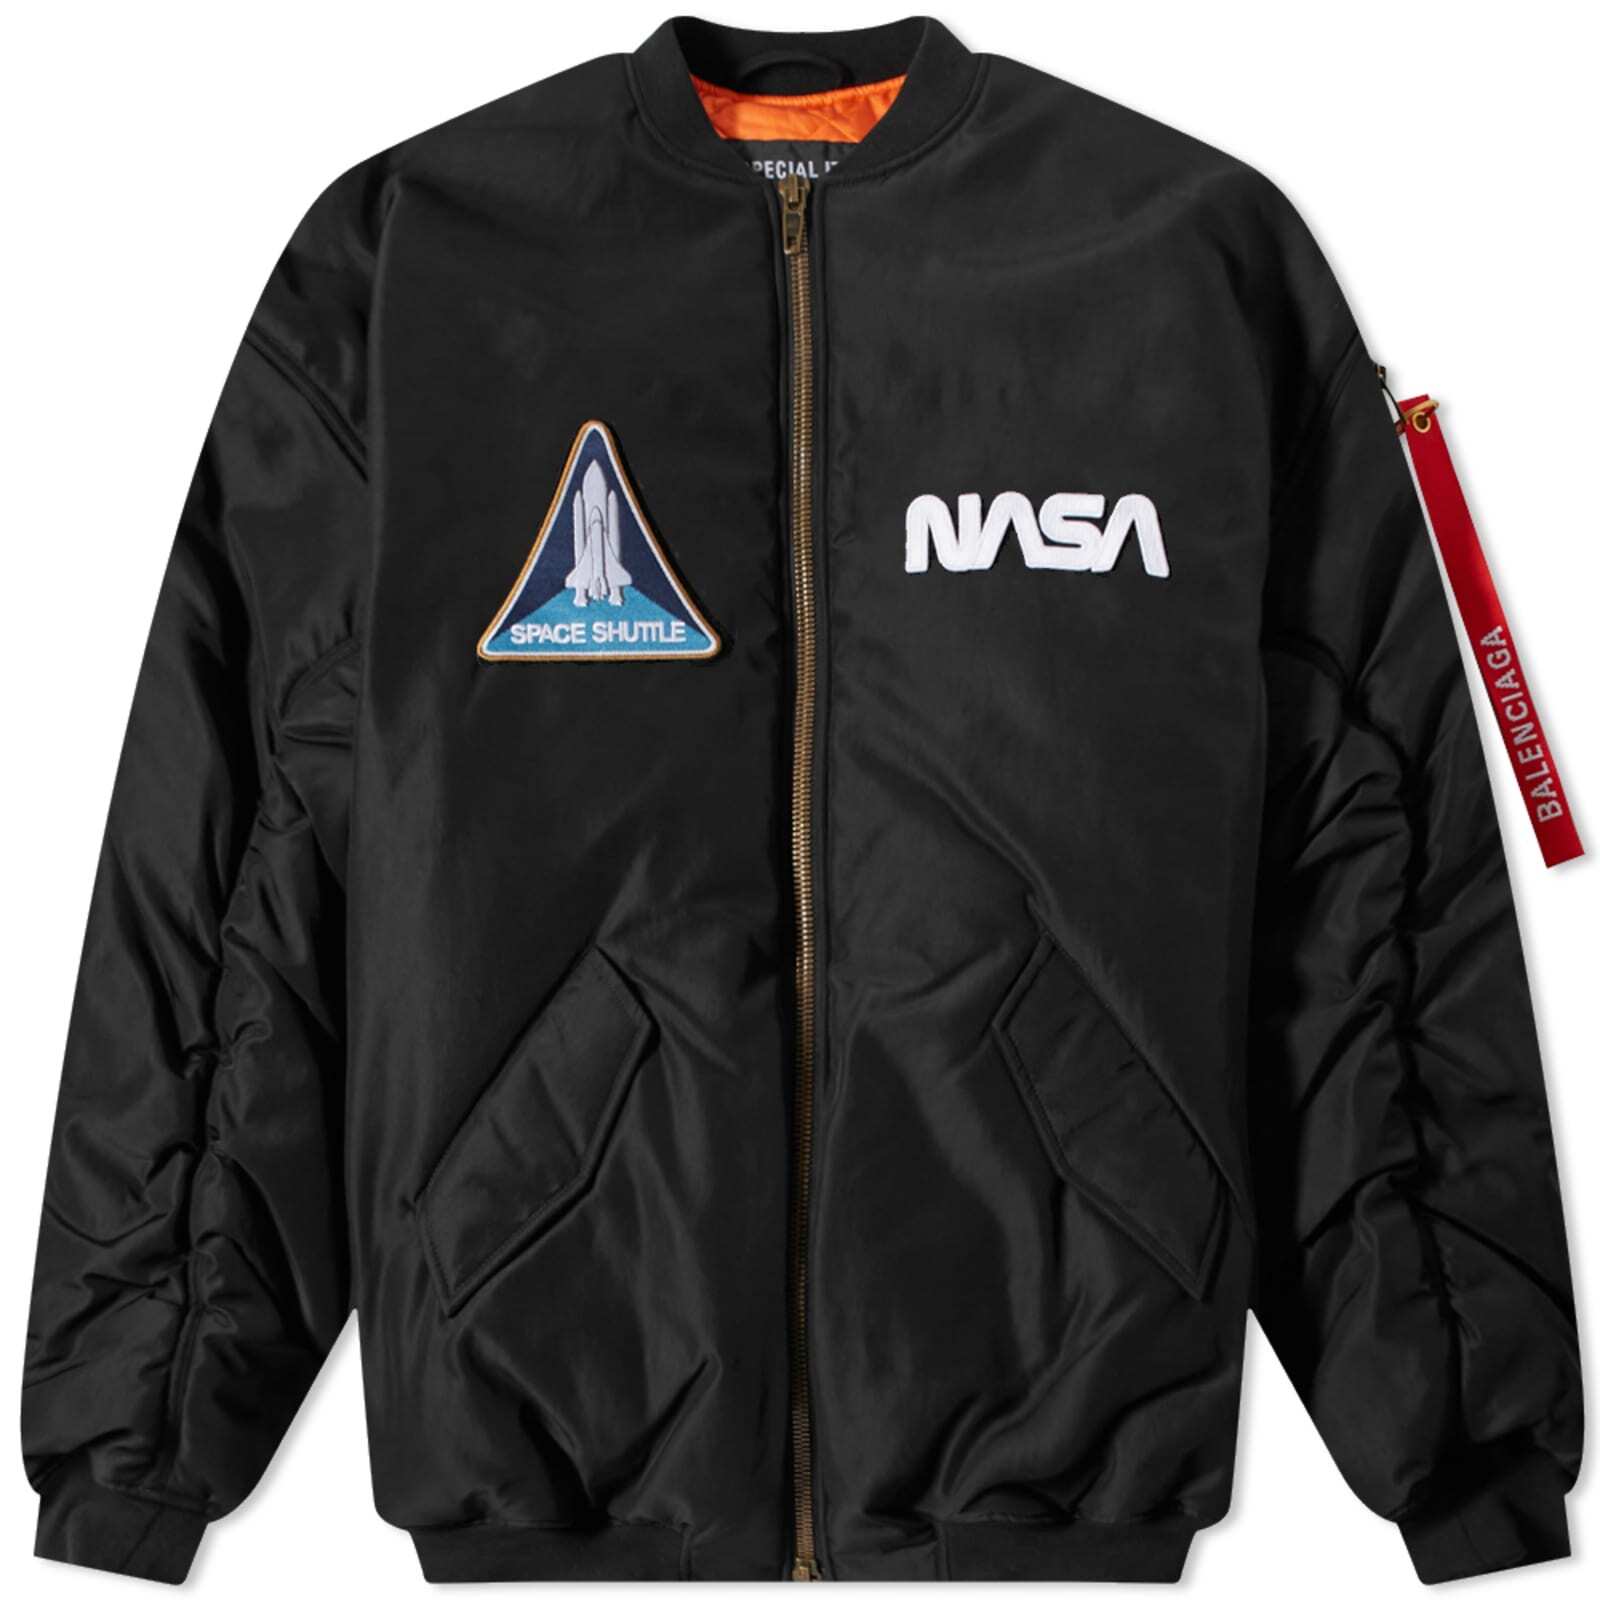 バレンシアガ　NASAボンバージャケット